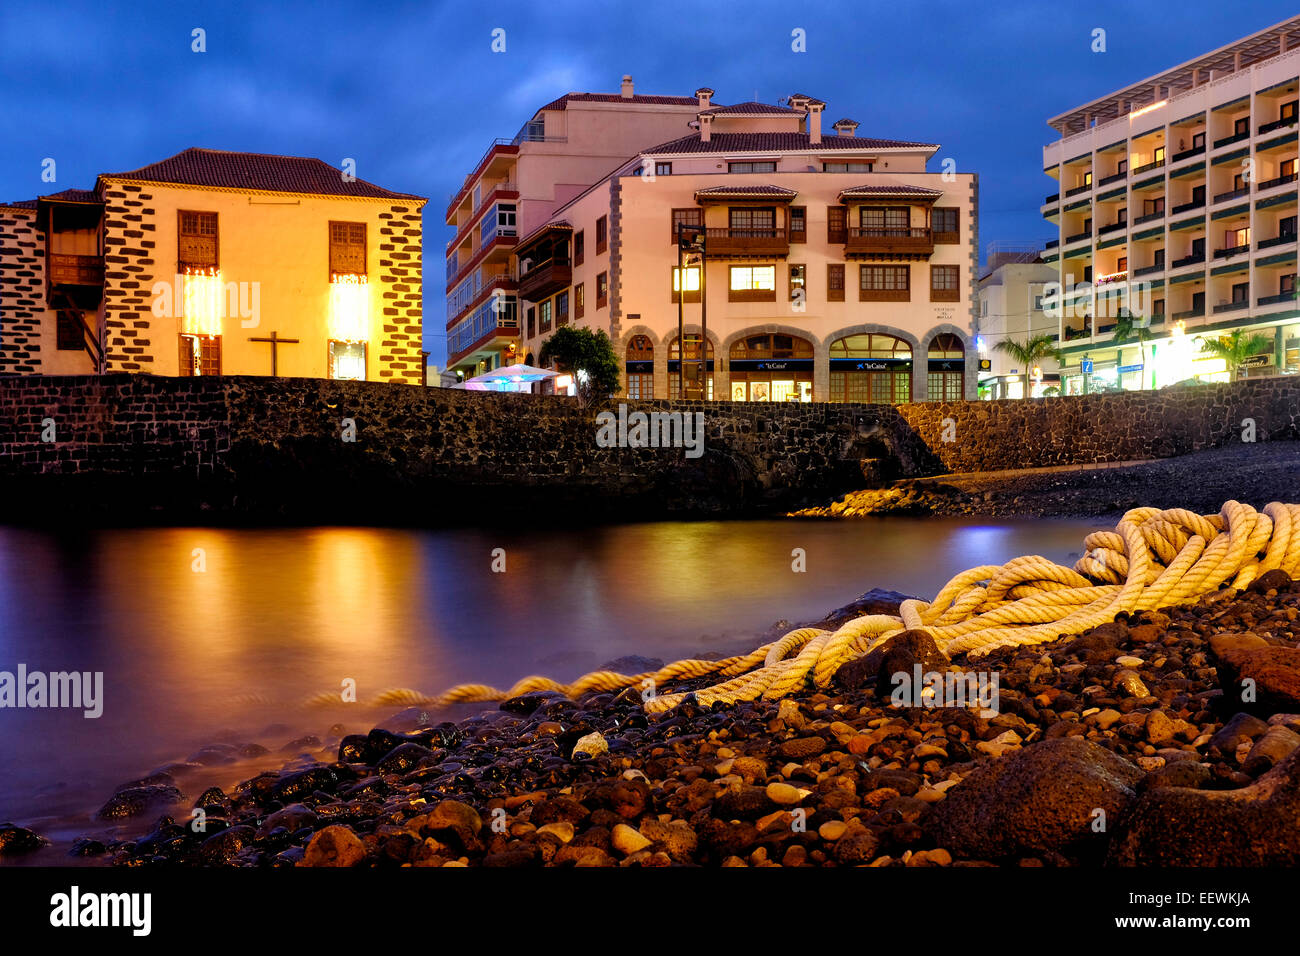 View of the Embarcadero de El Penitente, Puerto de la Cruz, Tenerife,  Canary Islands, Spain Stock Photo - Alamy